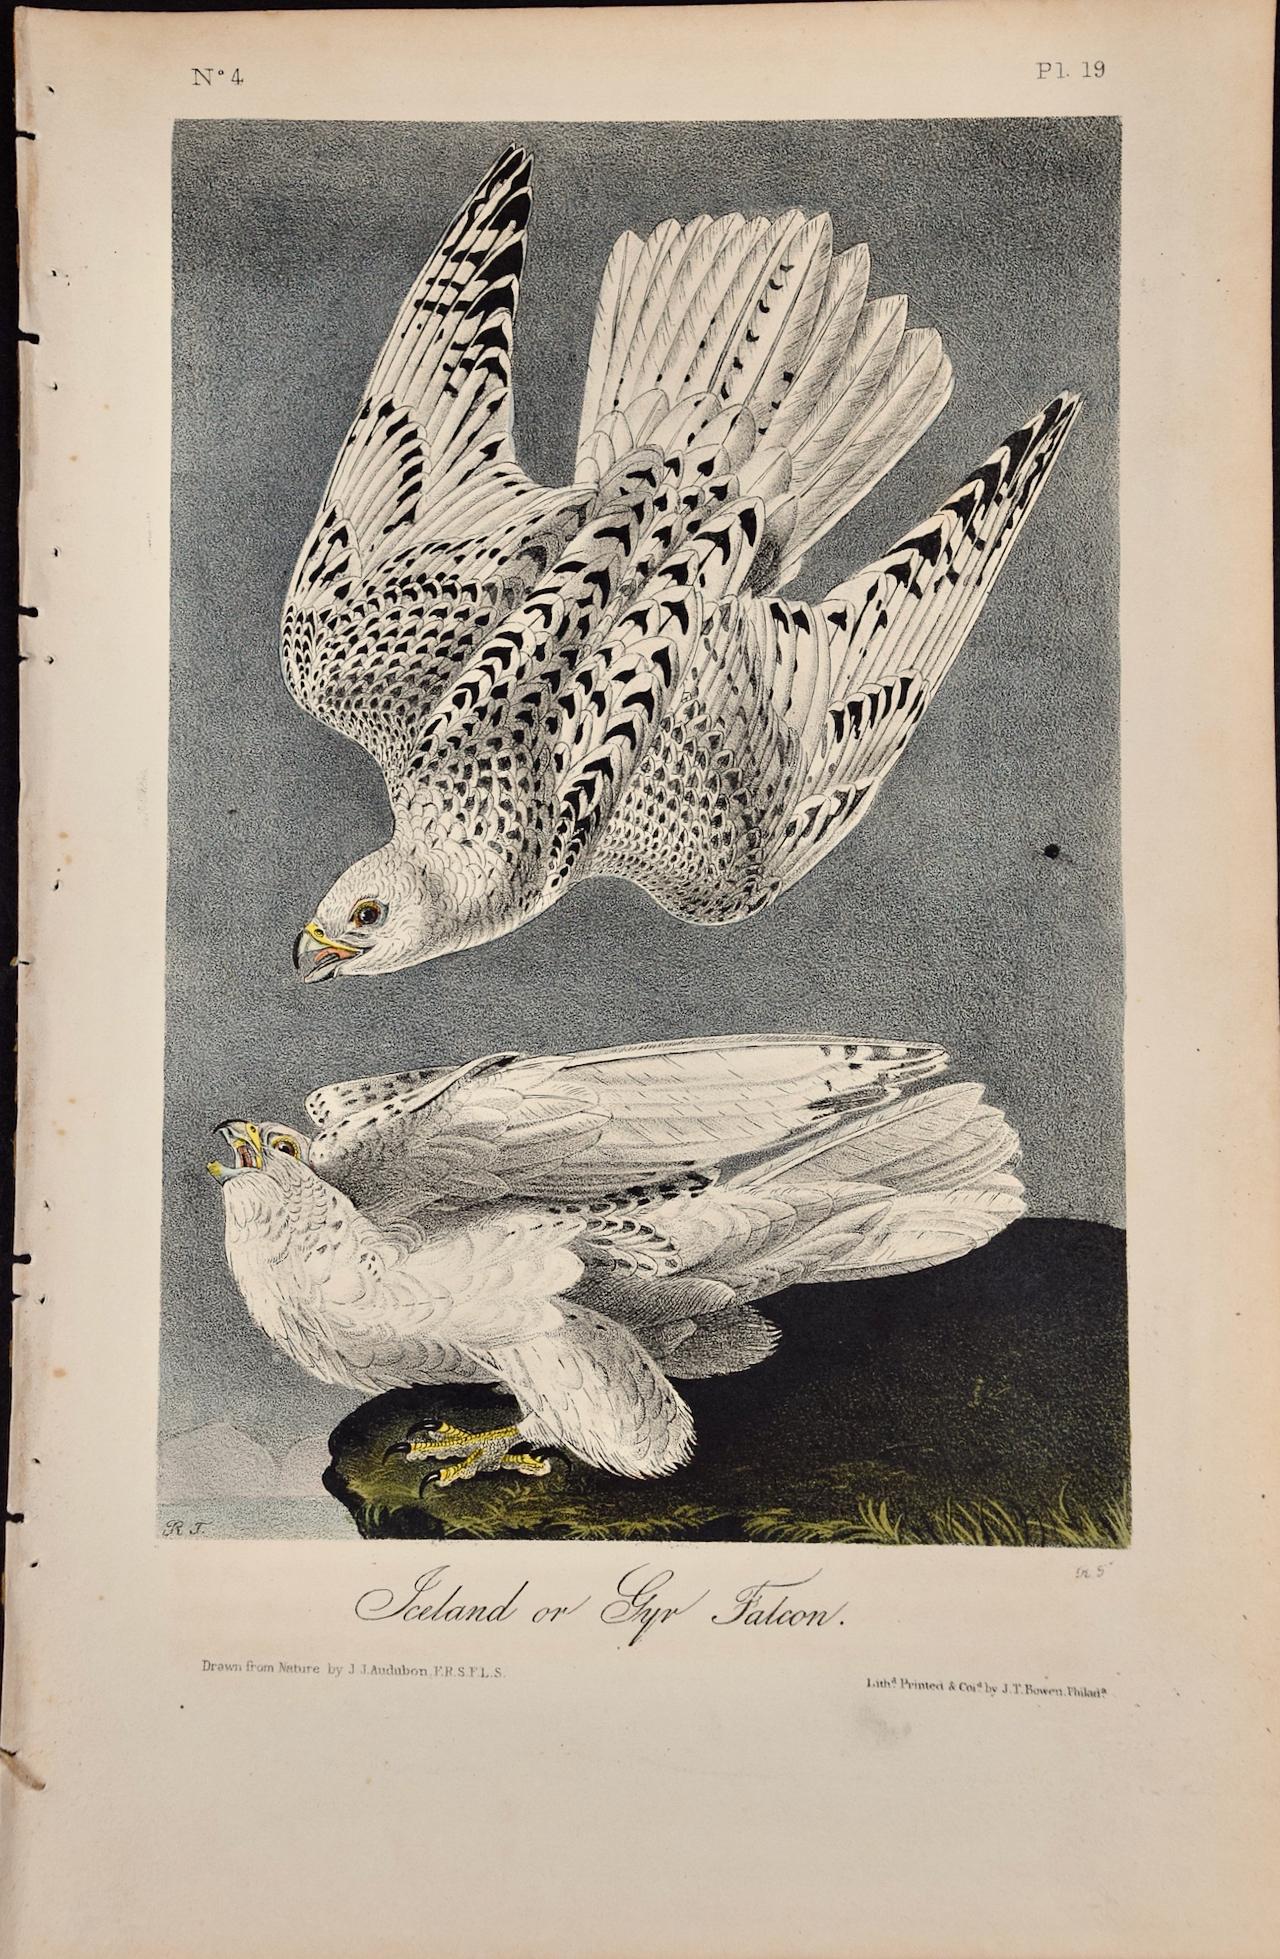 Animal Print John James Audubon - Iceland ou Gyr Falcon: An Original 1st Ed. Lithographie d'oiseaux colorée à la main Audubon 